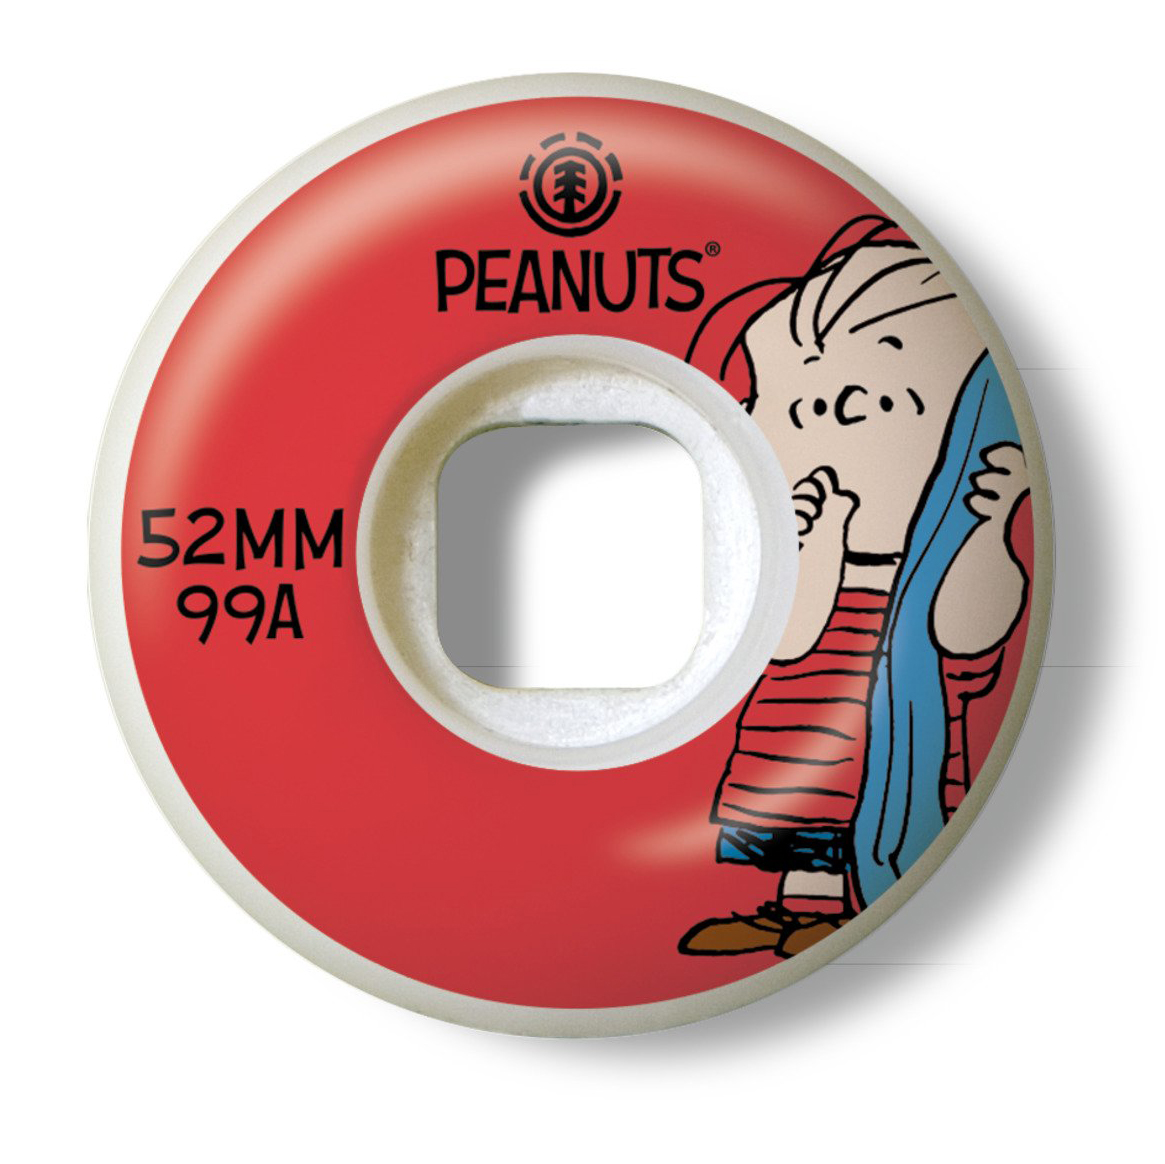 52 сквад. Element Peanuts Squad 52mm. Колеса element. Element penuts скейт комплект. Колеса element trip out 52mm.